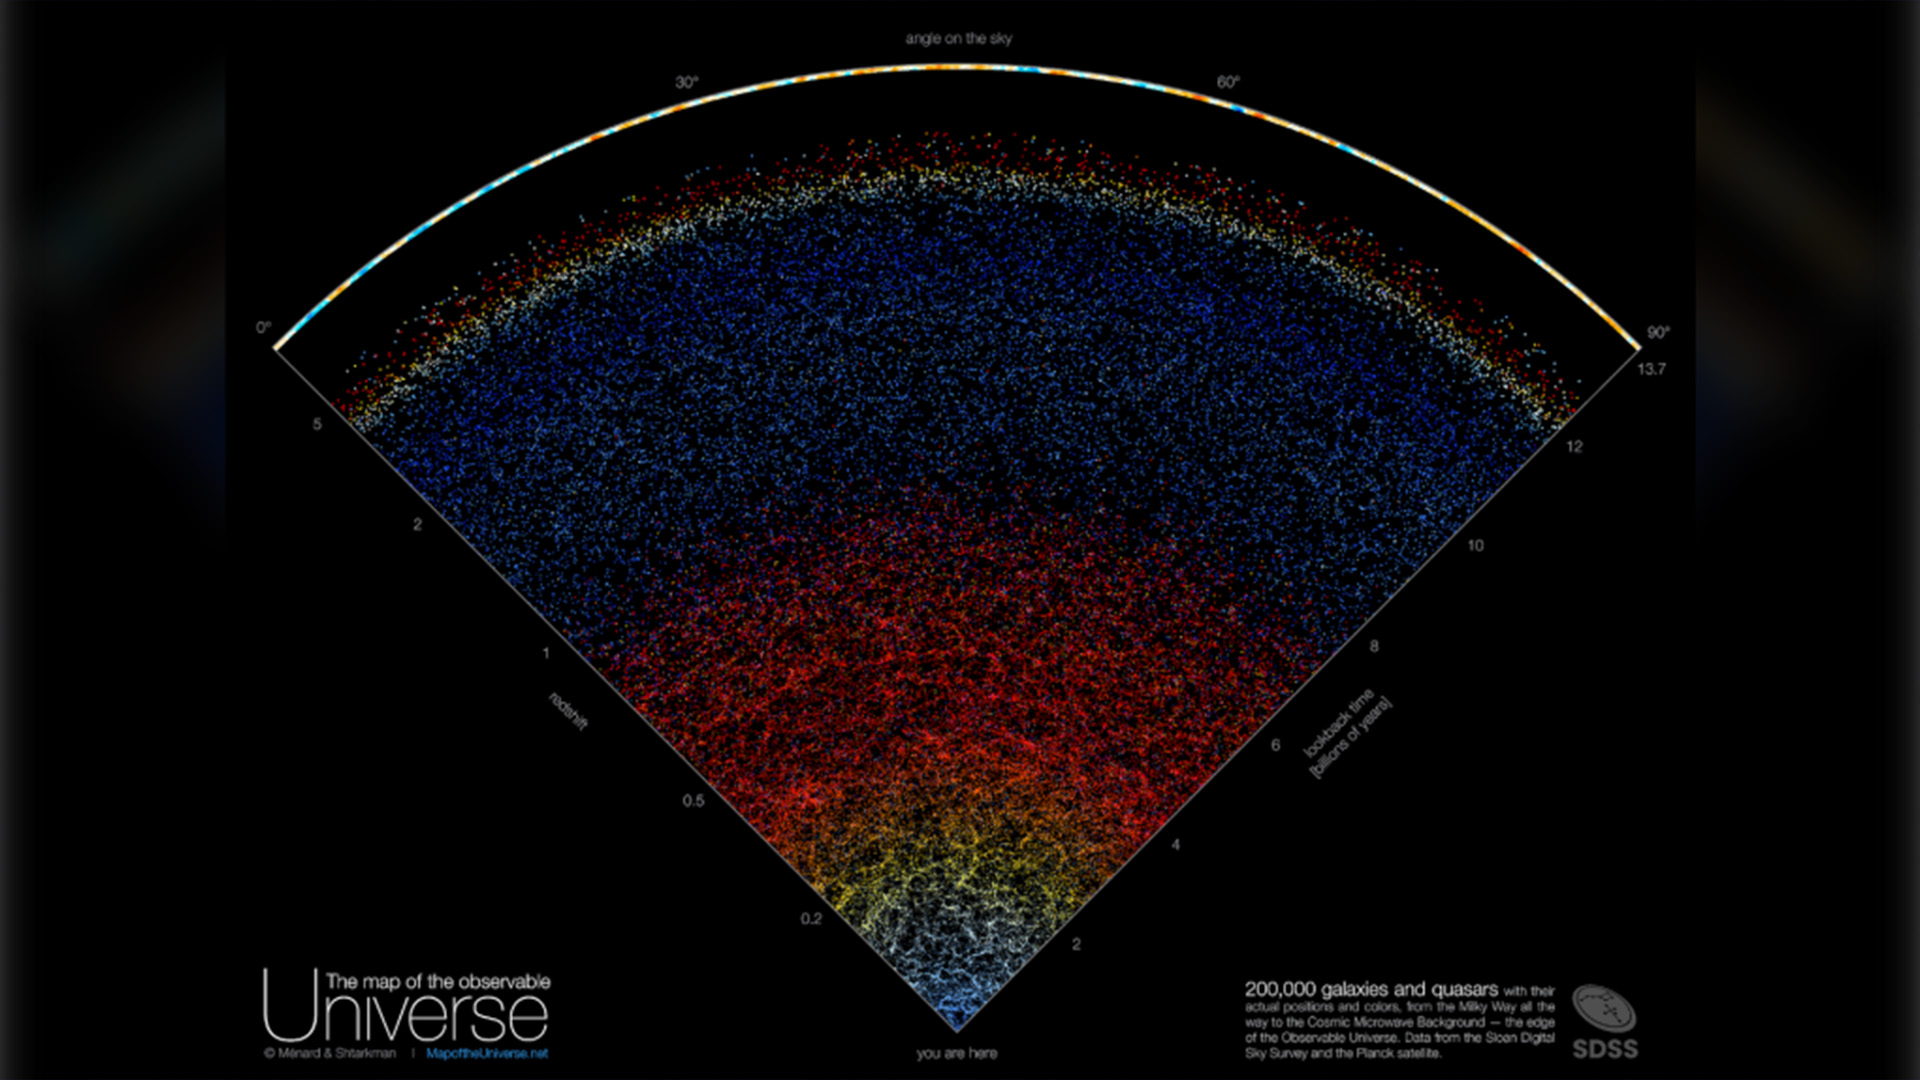 Cette carte montre une tranche de notre Univers, créée à partir de données astronomiques prises nuit après nuit sur une période de 15 ans à l'aide d'un télescope au Nouveau-Mexique, aux États-Unis. La Voie Lactée est située en bas, tandis qu'en haut se trouve le bord réel de l'Univers observable. Entre les deux, nous voyons environ 200 000 galaxies.